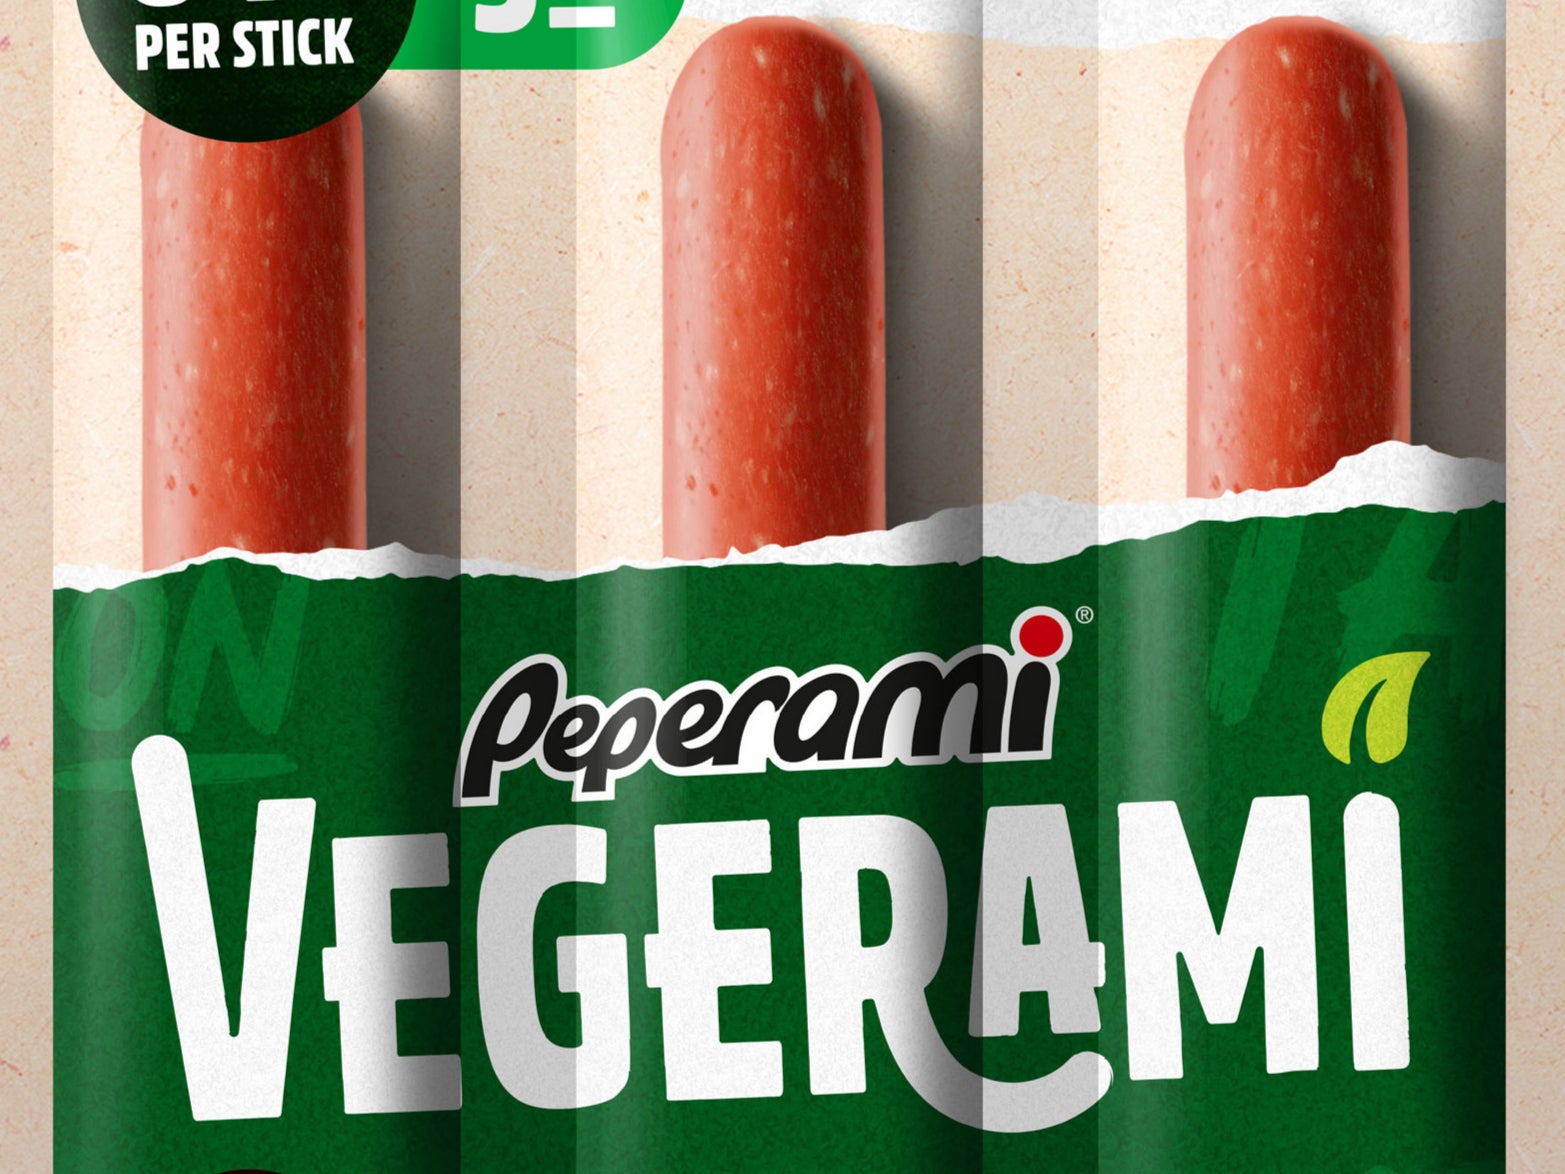 Peperami launches Vegerami sticks